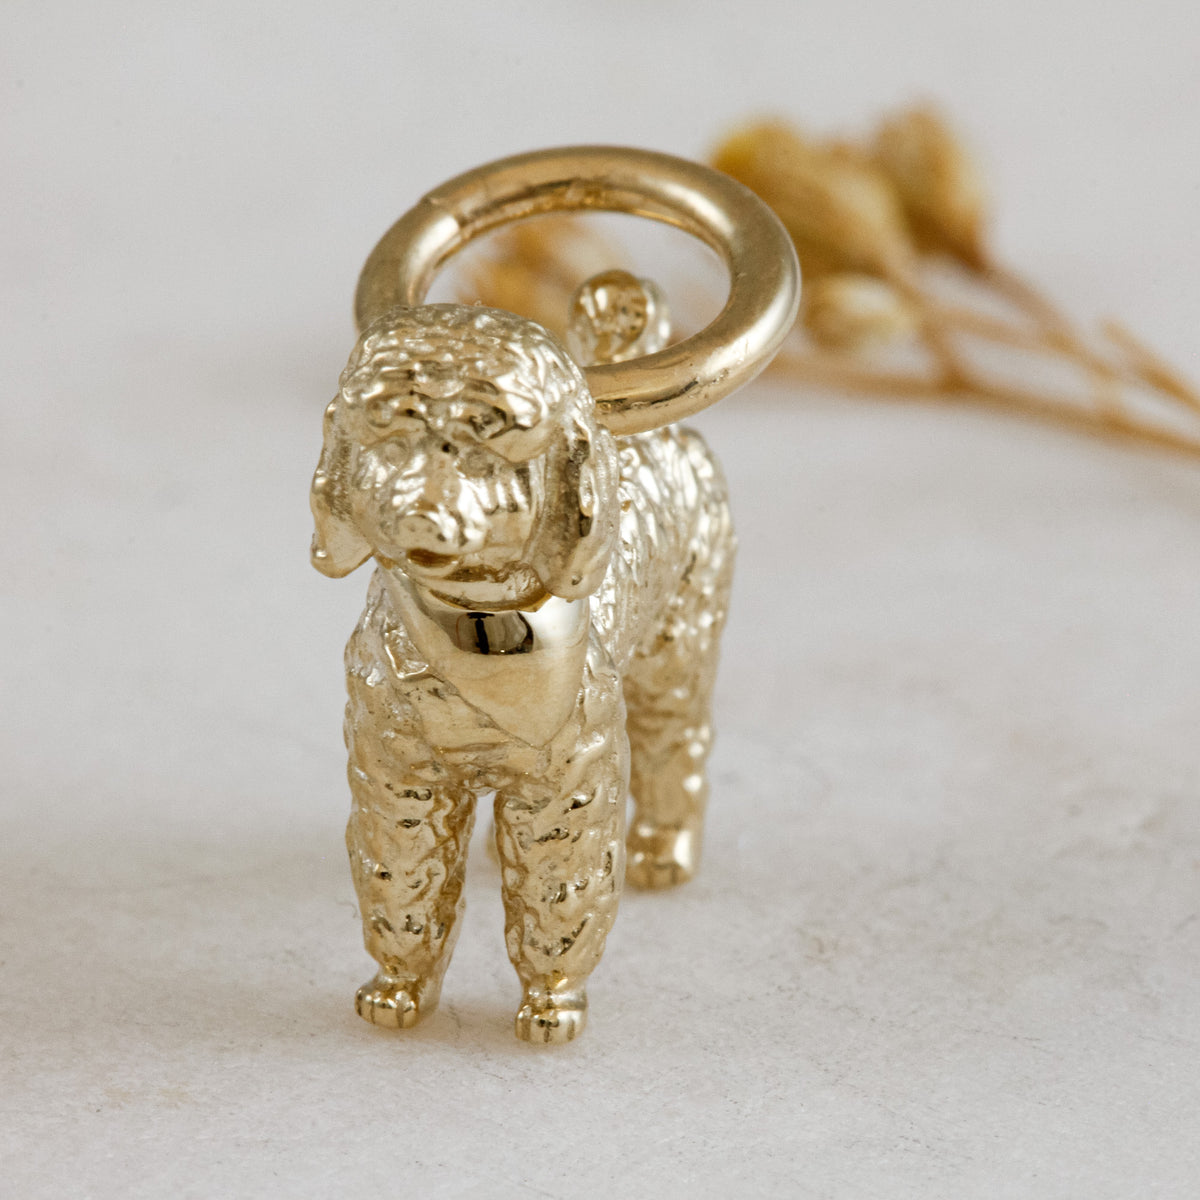 poodle solid gold dog charm for a necklace or bracelet